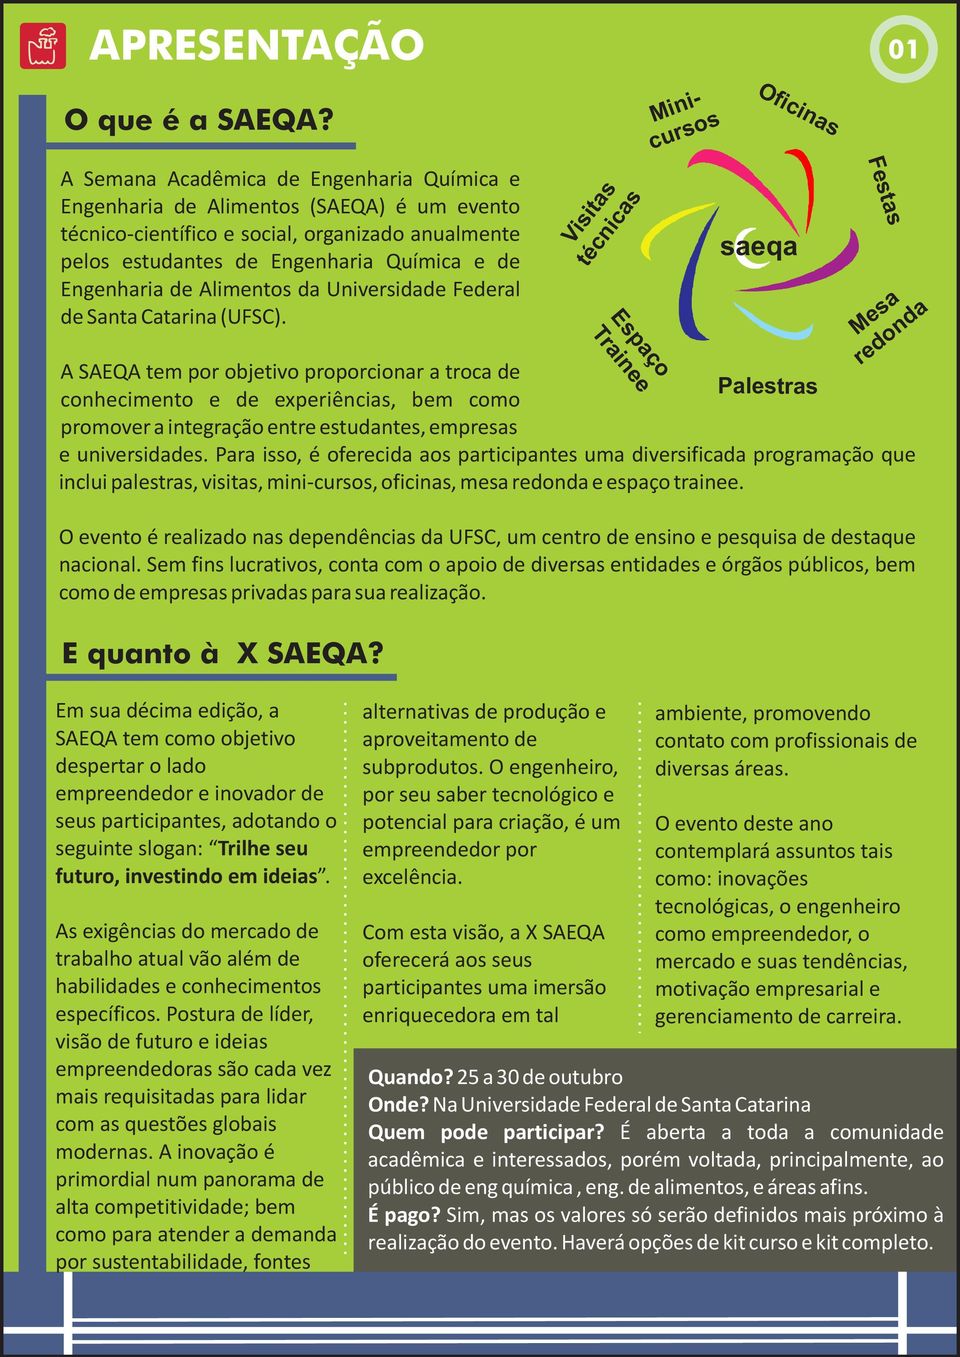 Alimentos da Universidade Federal de Santa Catarina (UFSC).